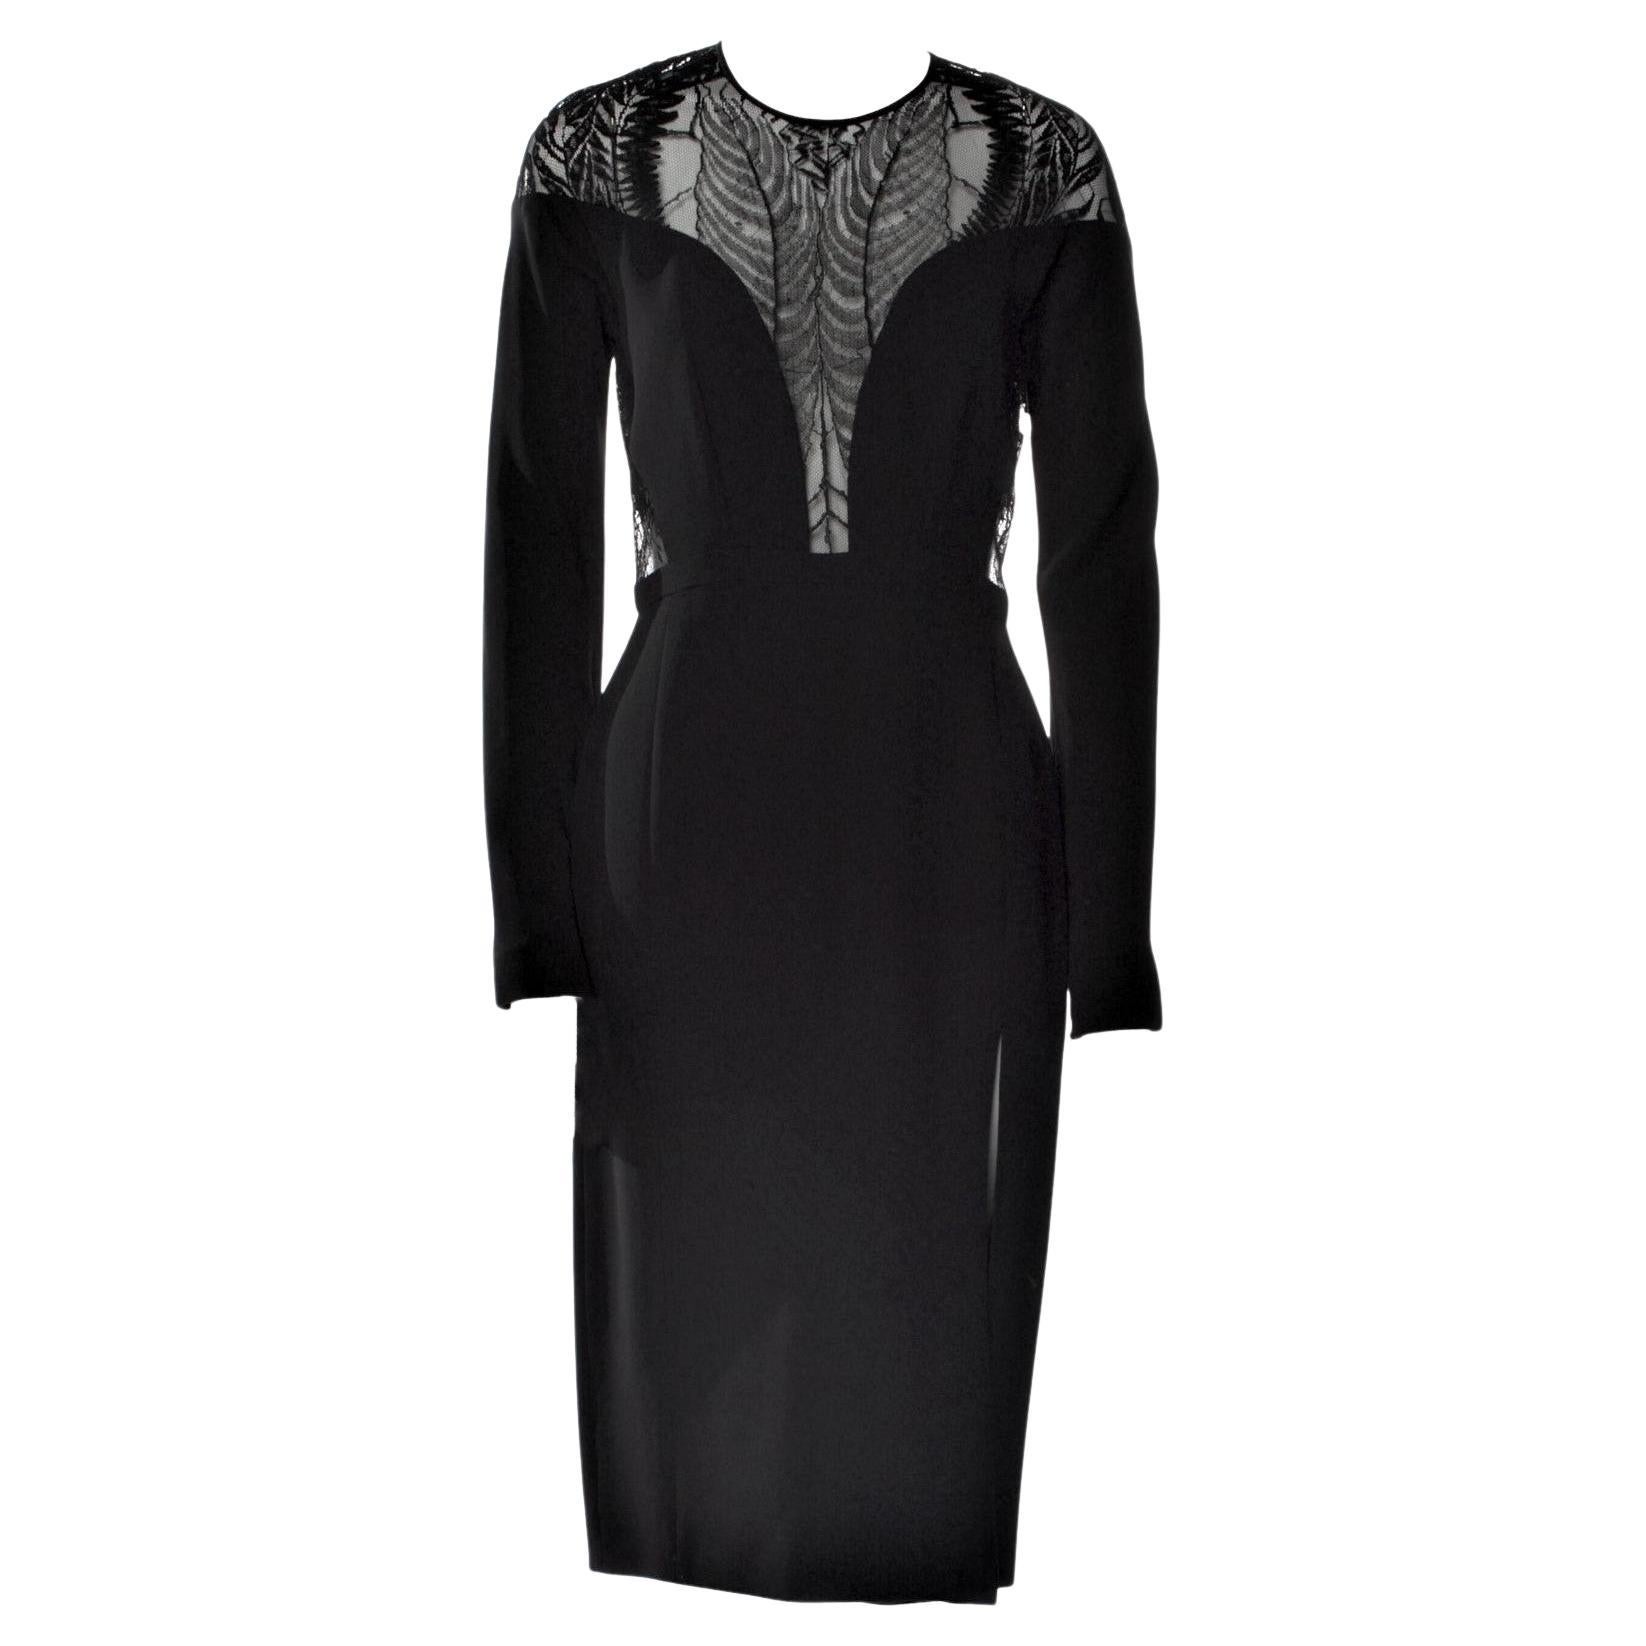 New Rare Gucci Black Spiderweb Silk Runway Dress Fall 2013 Sz 42 $2875